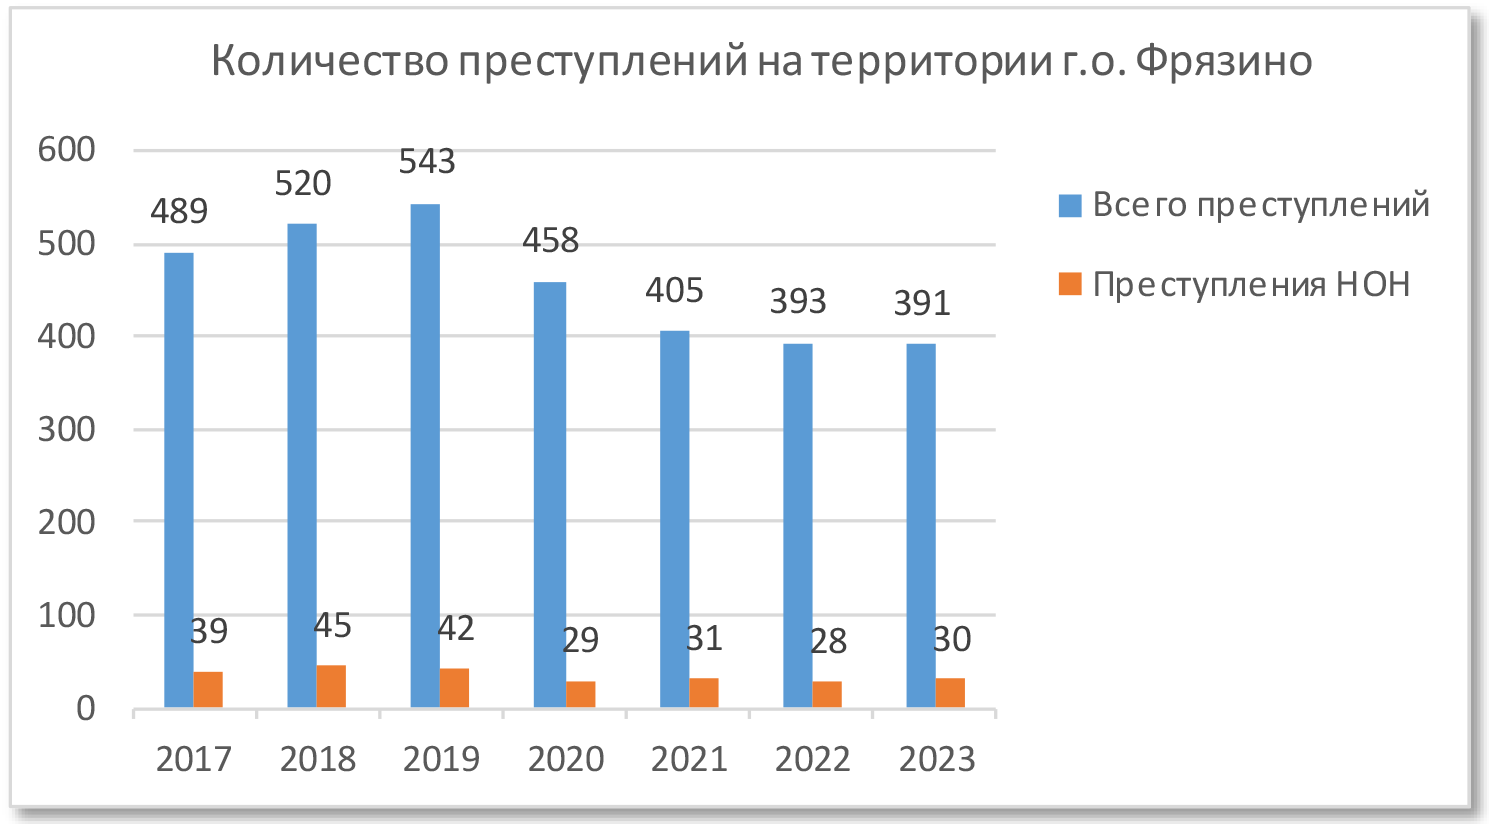 Анализ преступлений по годам 2017-2023 г.г.